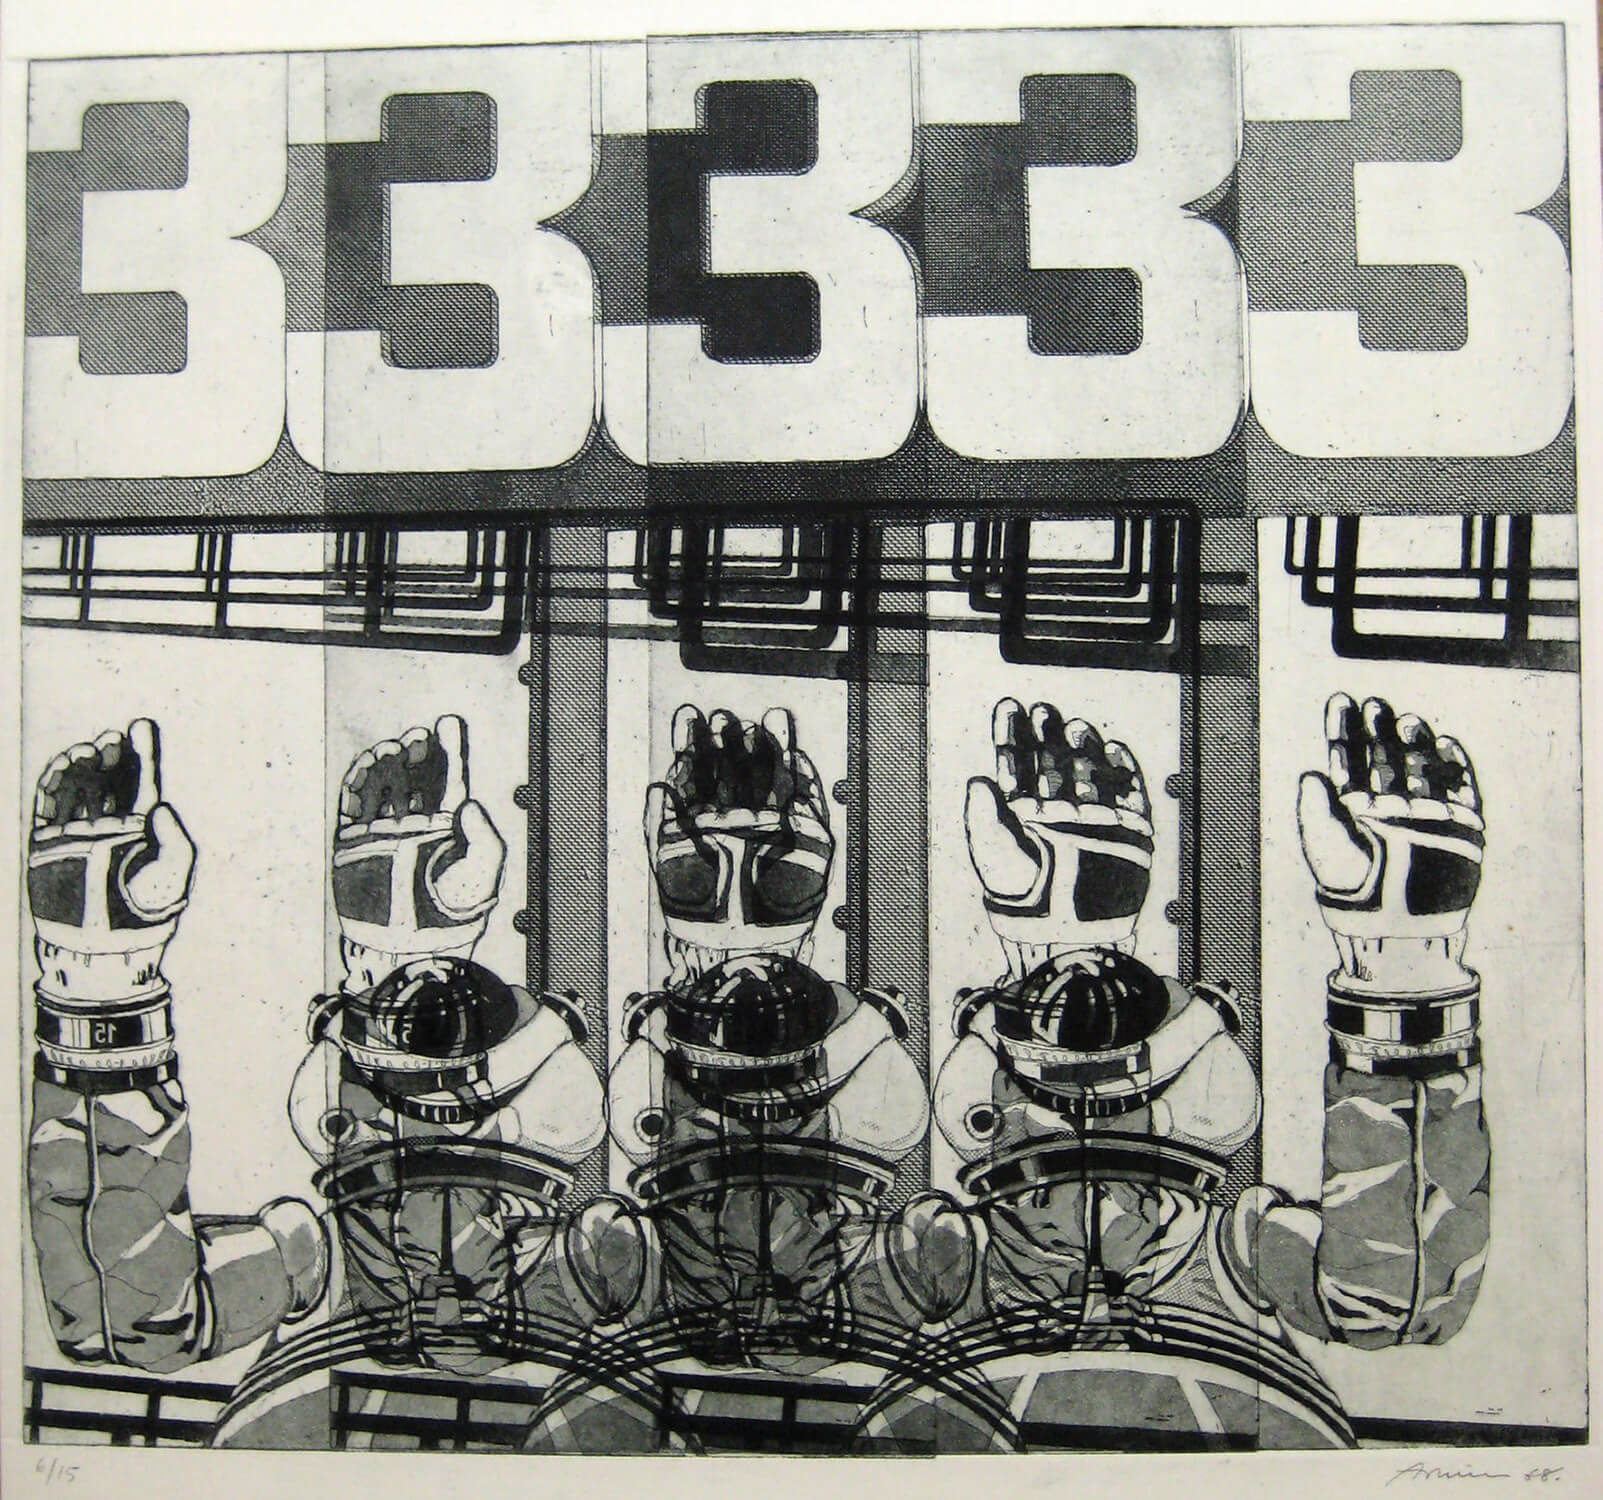 Bettina von Arnim, three, 1968, Radierung, Auflage: 15. 34,5 x 38,5 cm (nur als Mappe mit 5 Radierungen)